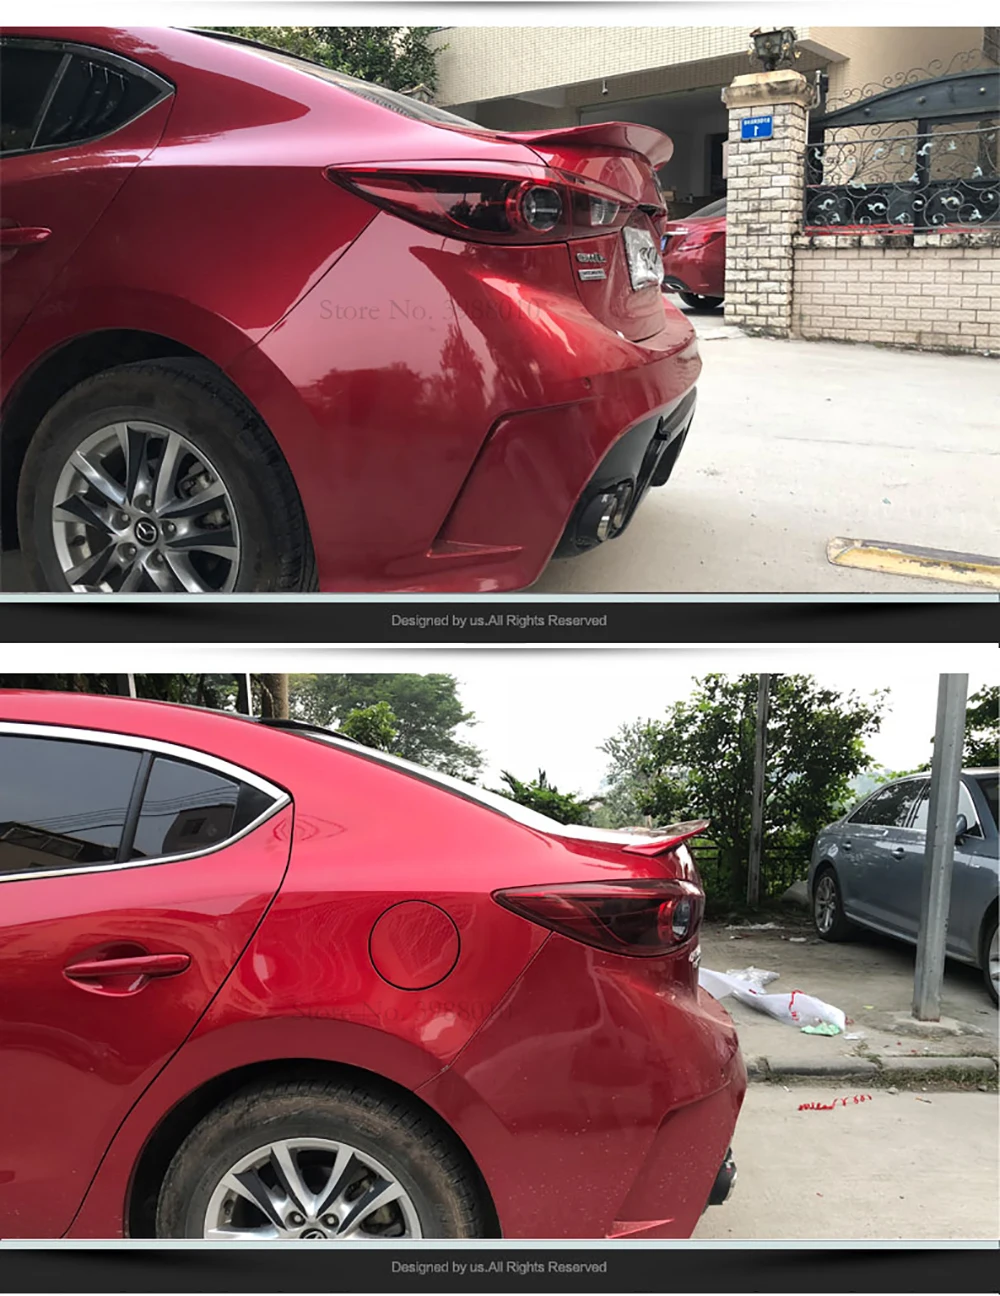 Автомобиль StylingABS пластик Неокрашенный цвет задний спойлер на крыше крыло багажника губы Загрузки Крышка для Mazda 3 Axela Седан 4 двери